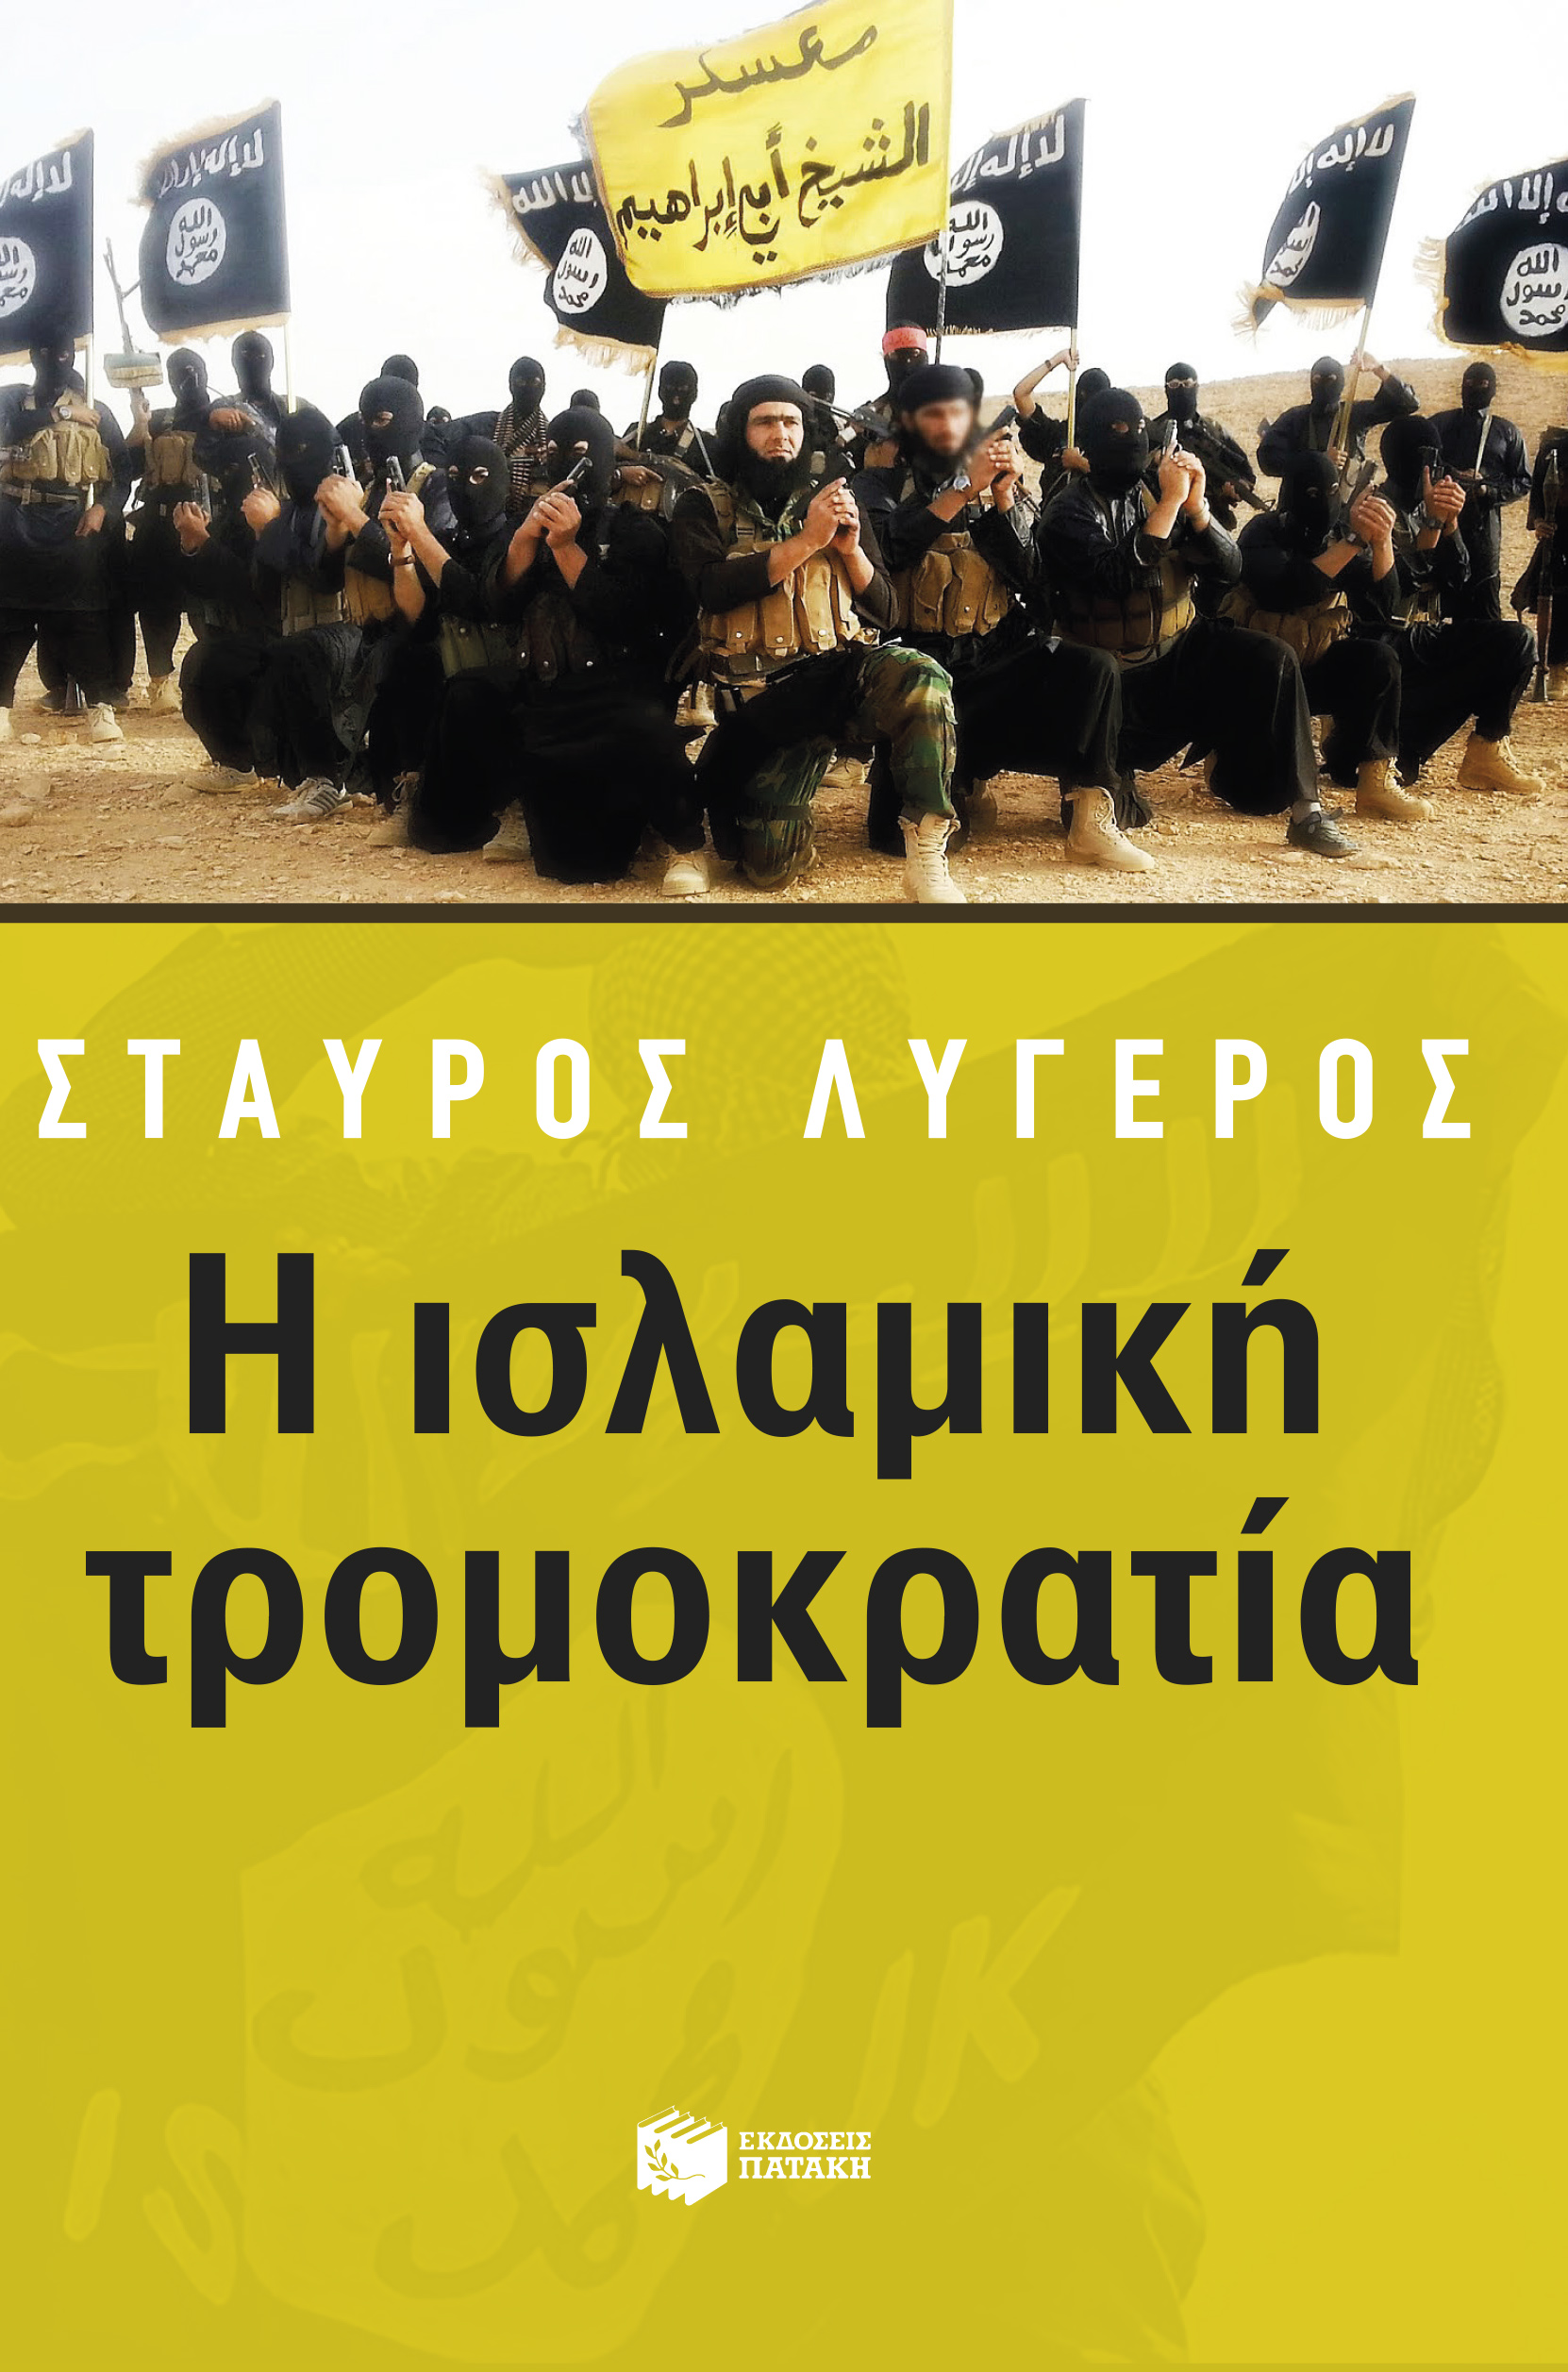 “Η ισλαμική τρομοκρατία”: Το νέο βιβλίο του Σταύρου Λυγερού